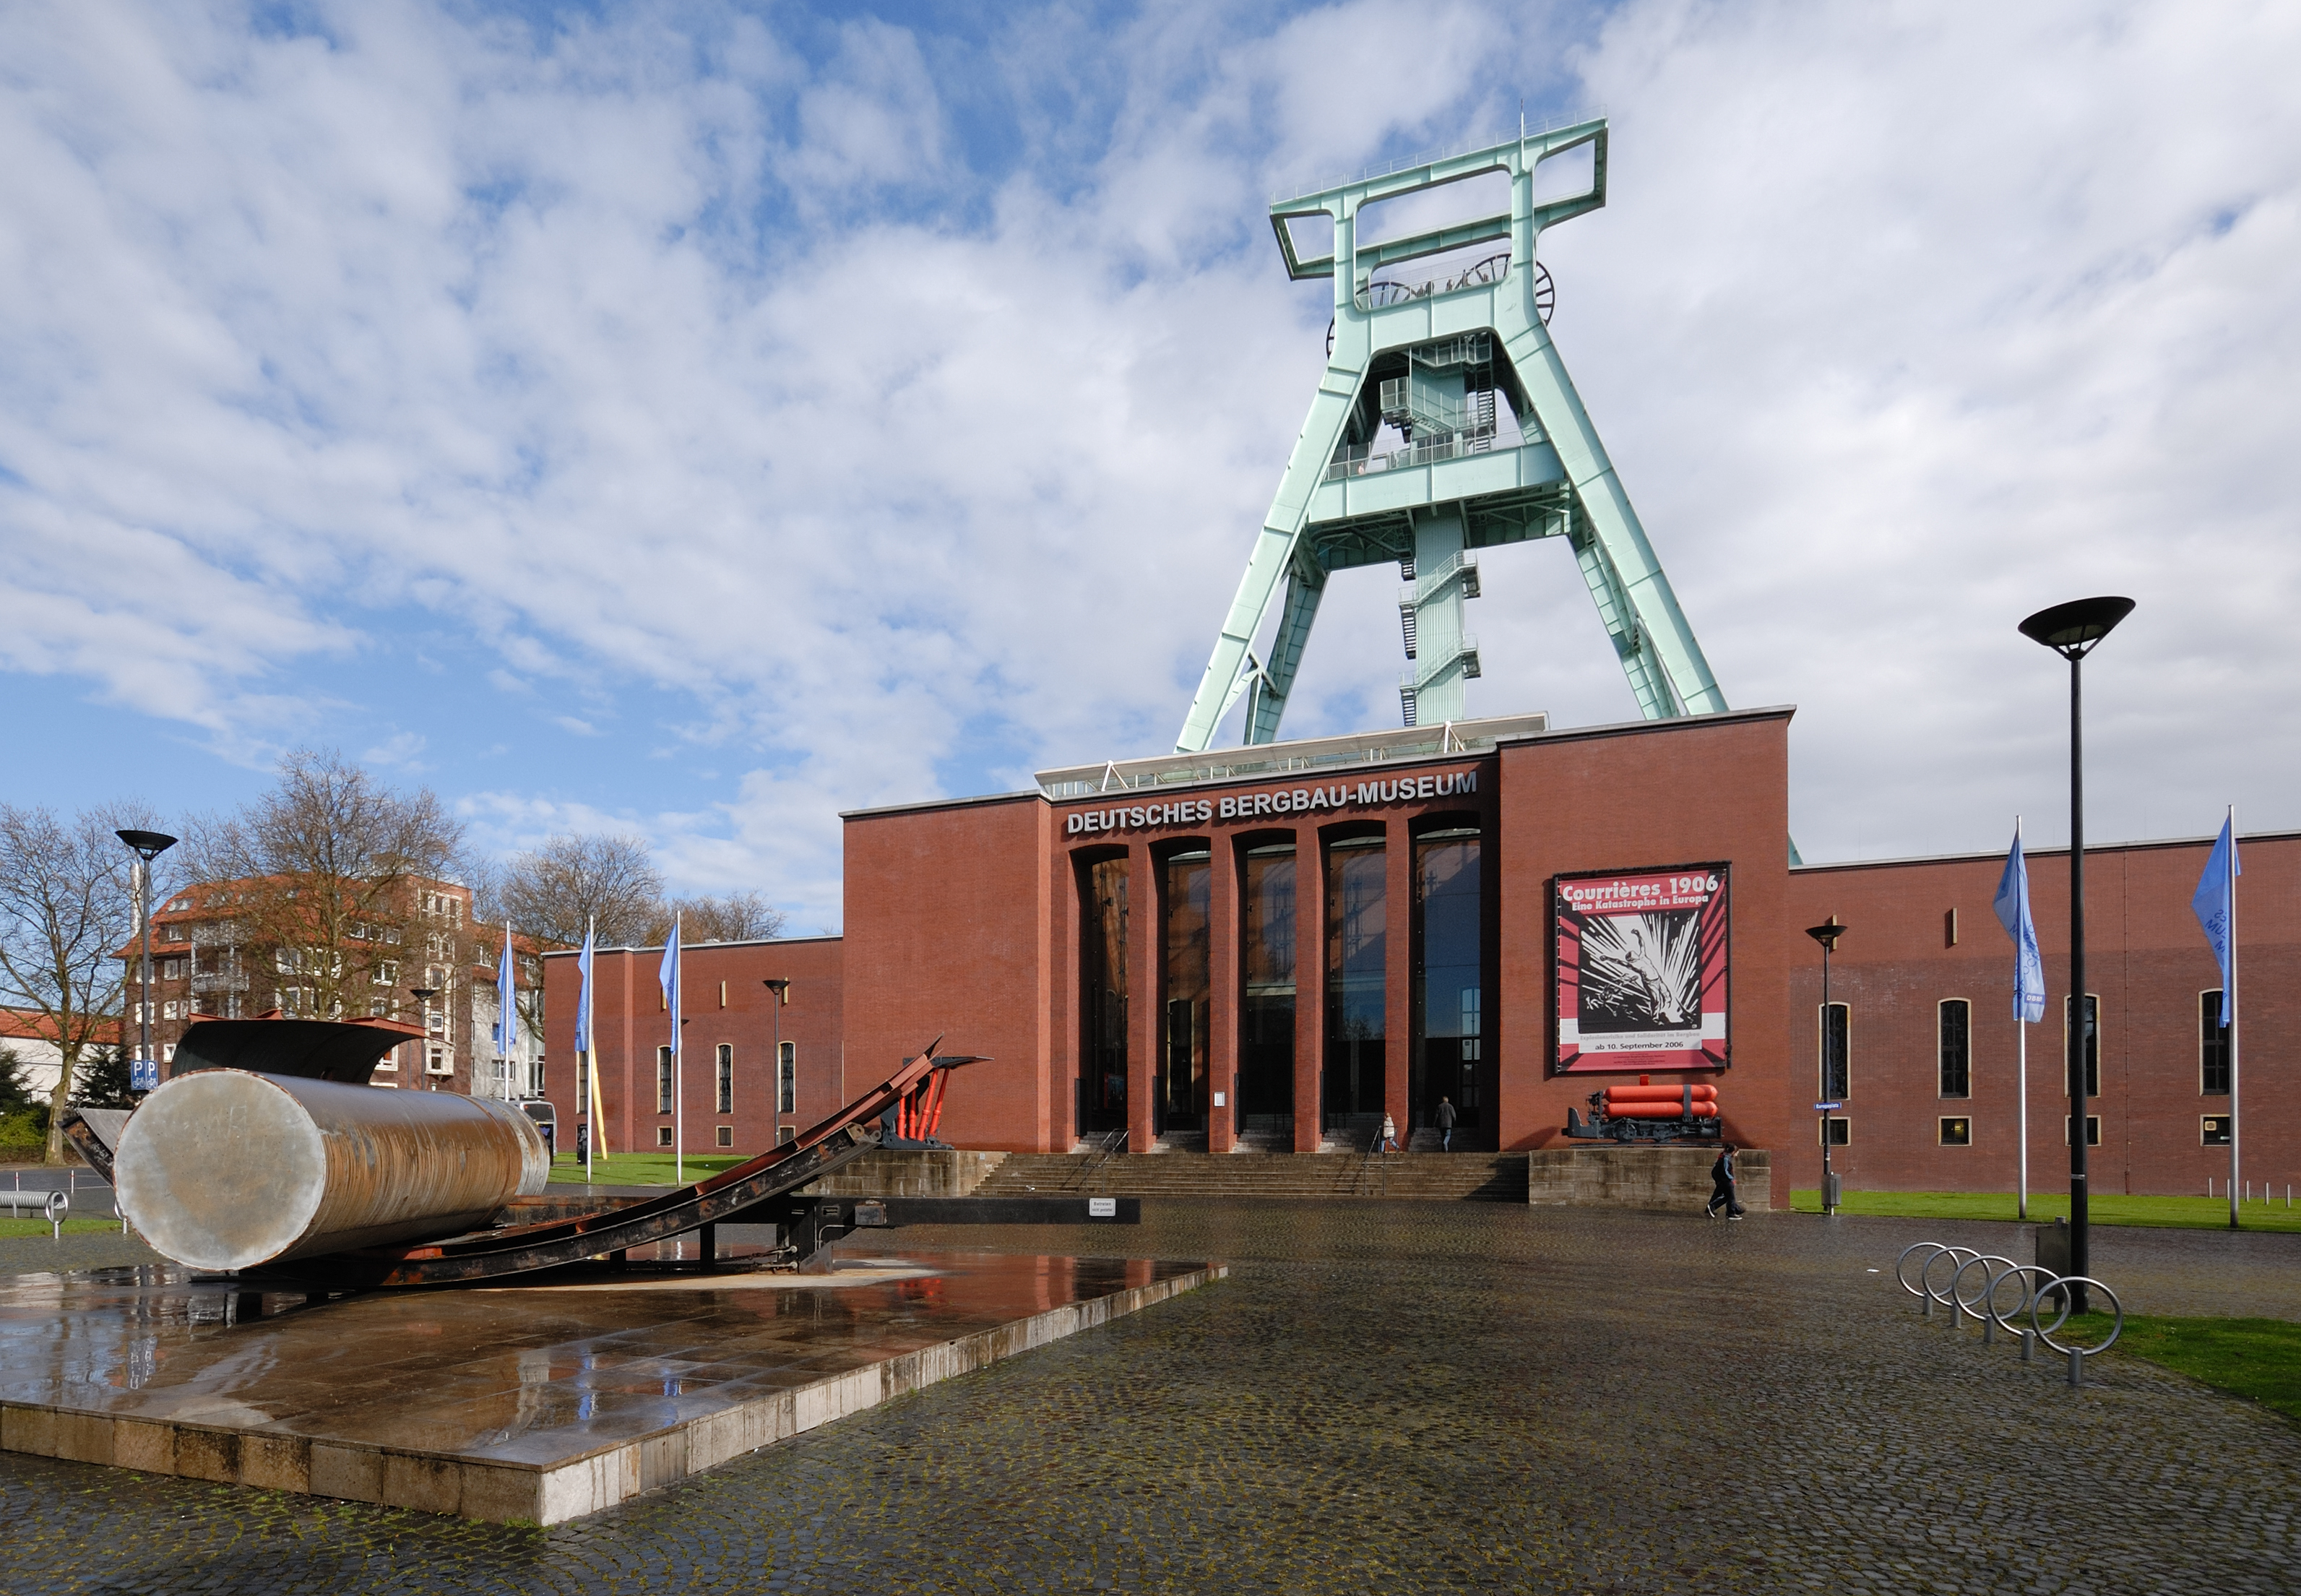 "Zu sehen ist die Eingangssituation des Deutschen Bergbau-Museums in Bochum mit Vorplatz und Eingangstor."